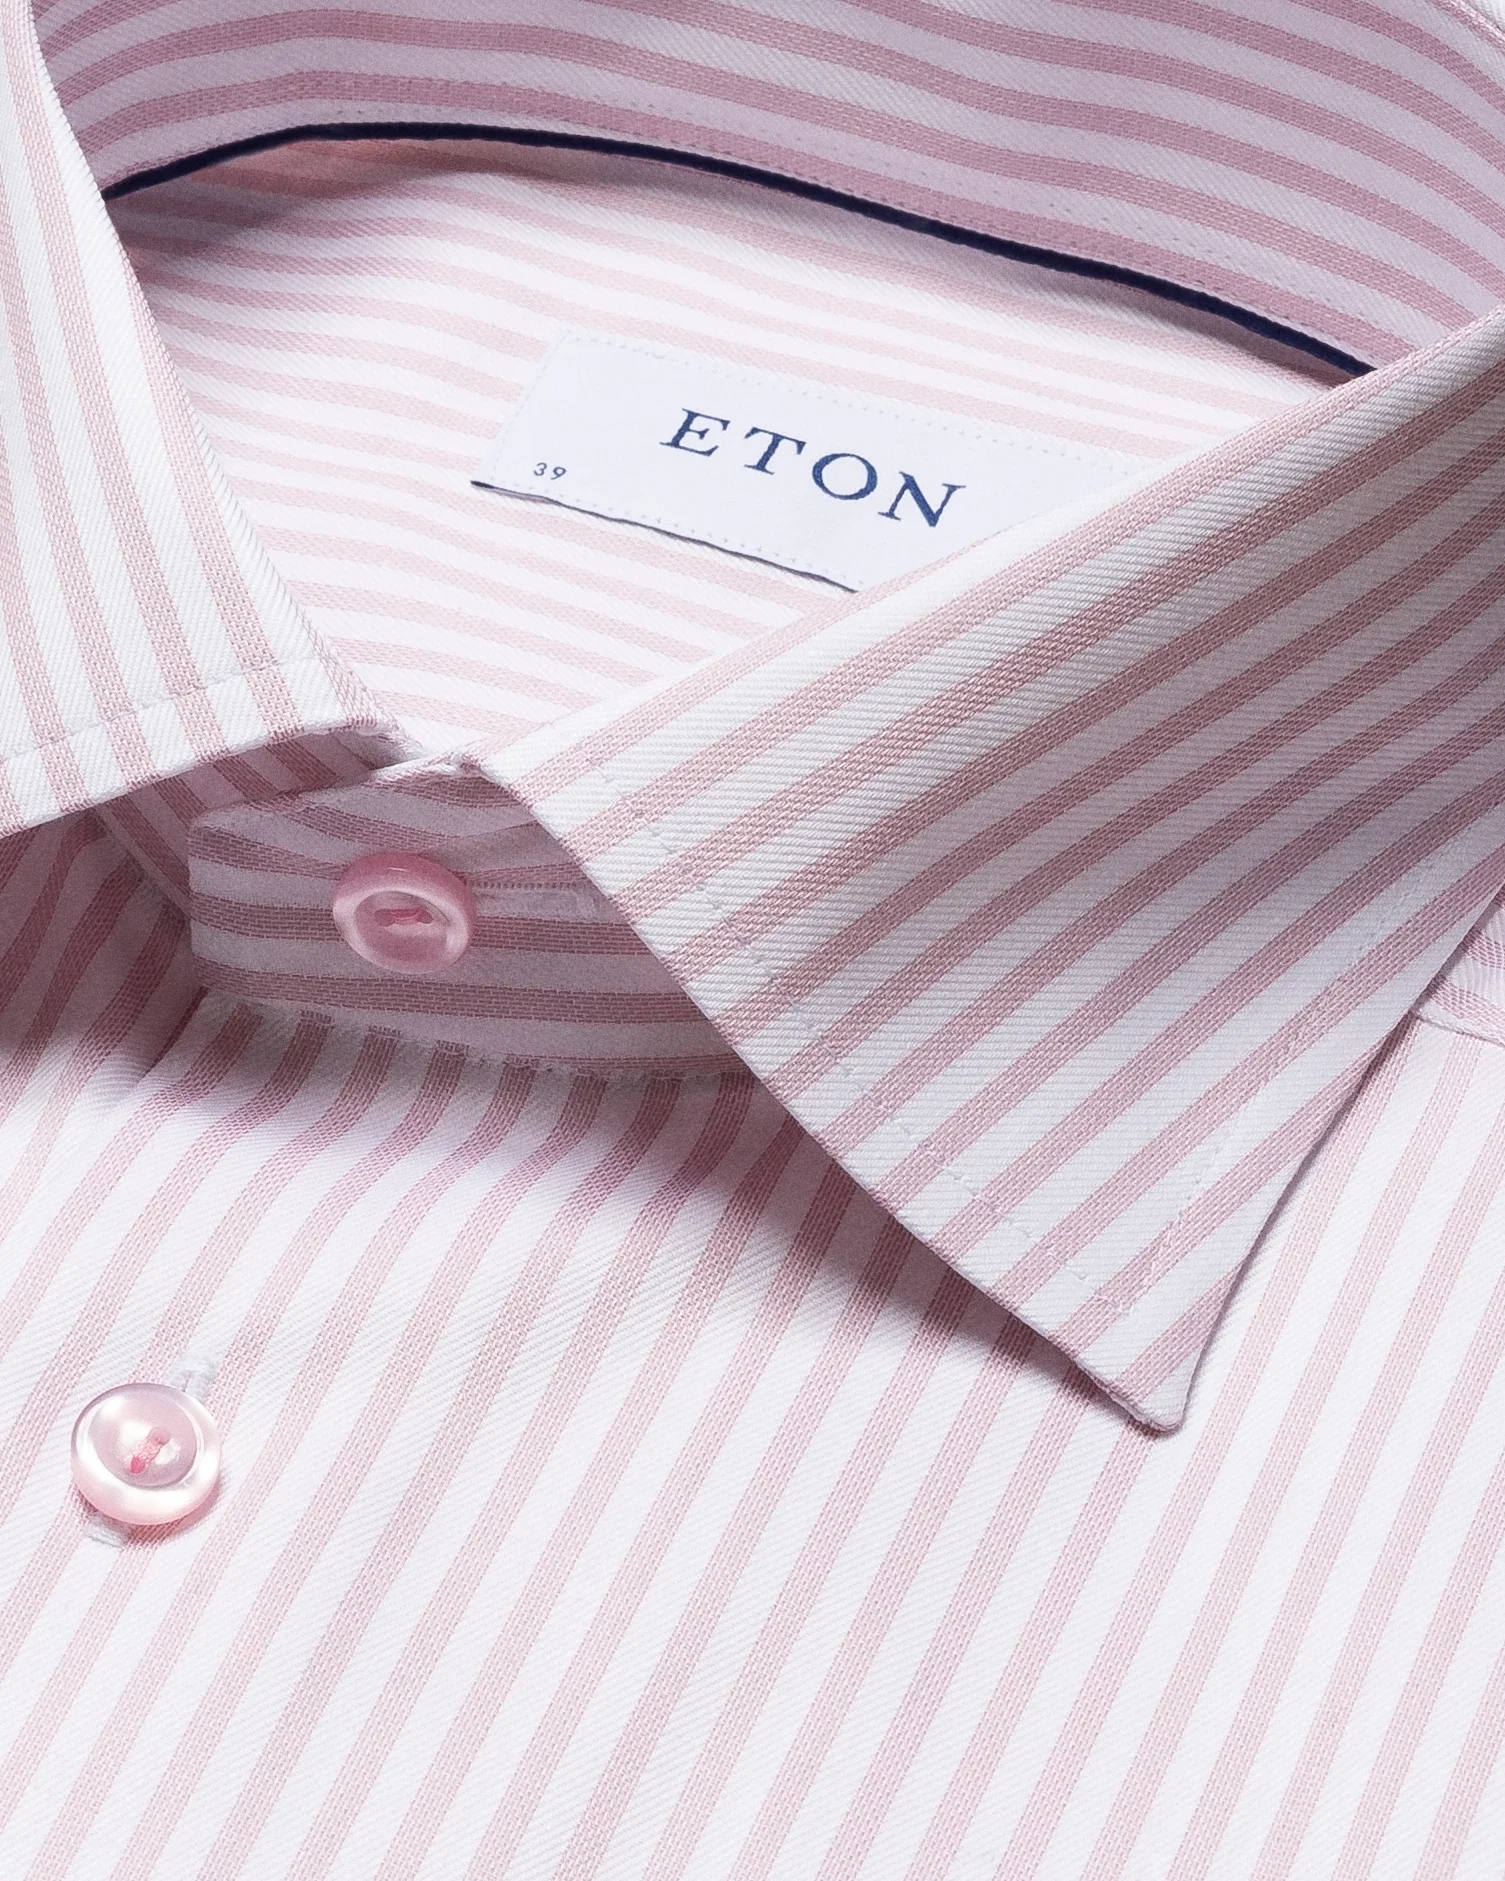 Eton - pink striped signature twill shirt